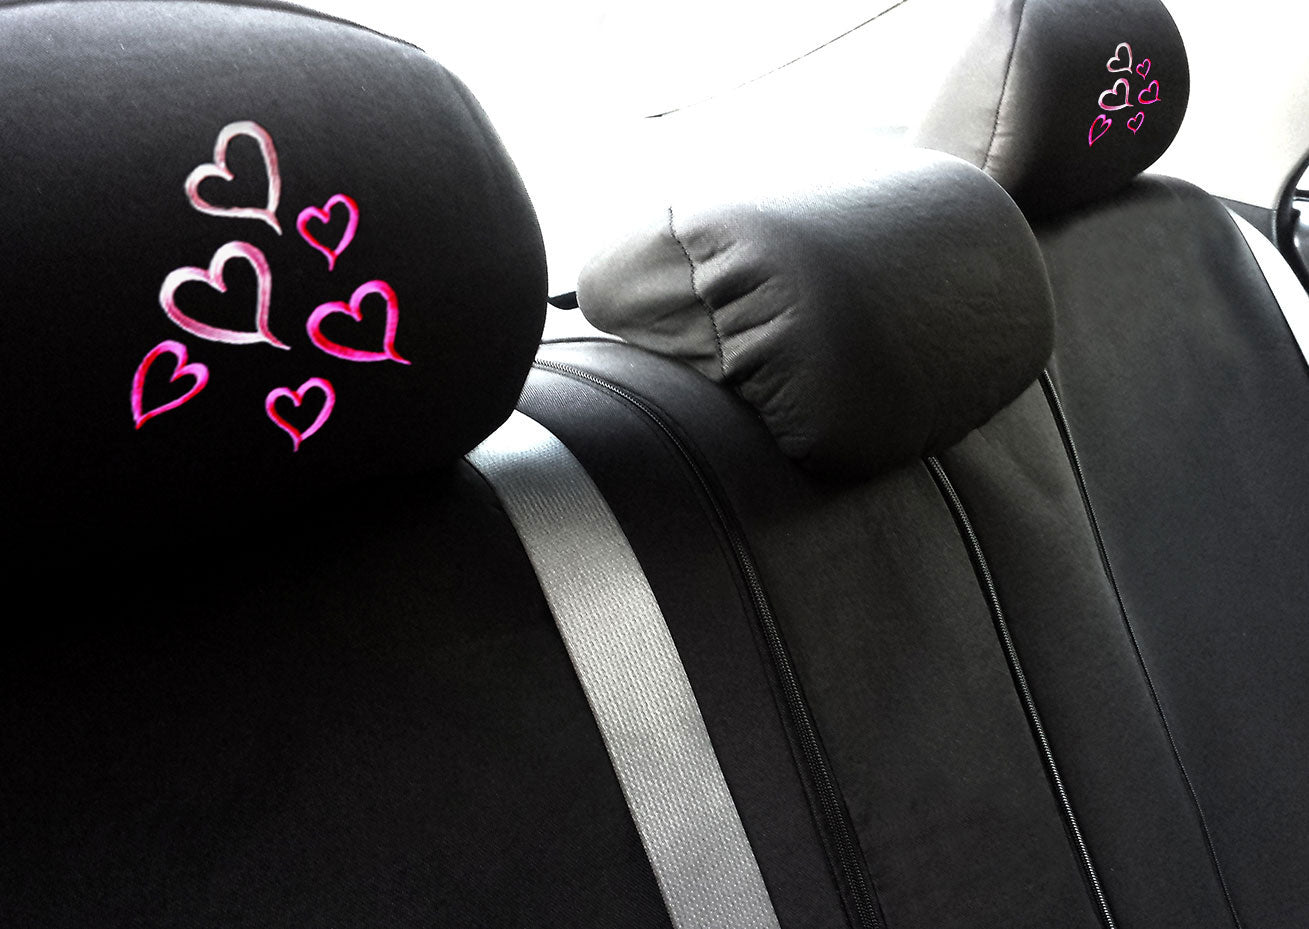 Embroidery Multi Hearts Logo Design Auto Truck SUV Car Seat Headrest Cover Accessory 1 Piece - Yupbizauto